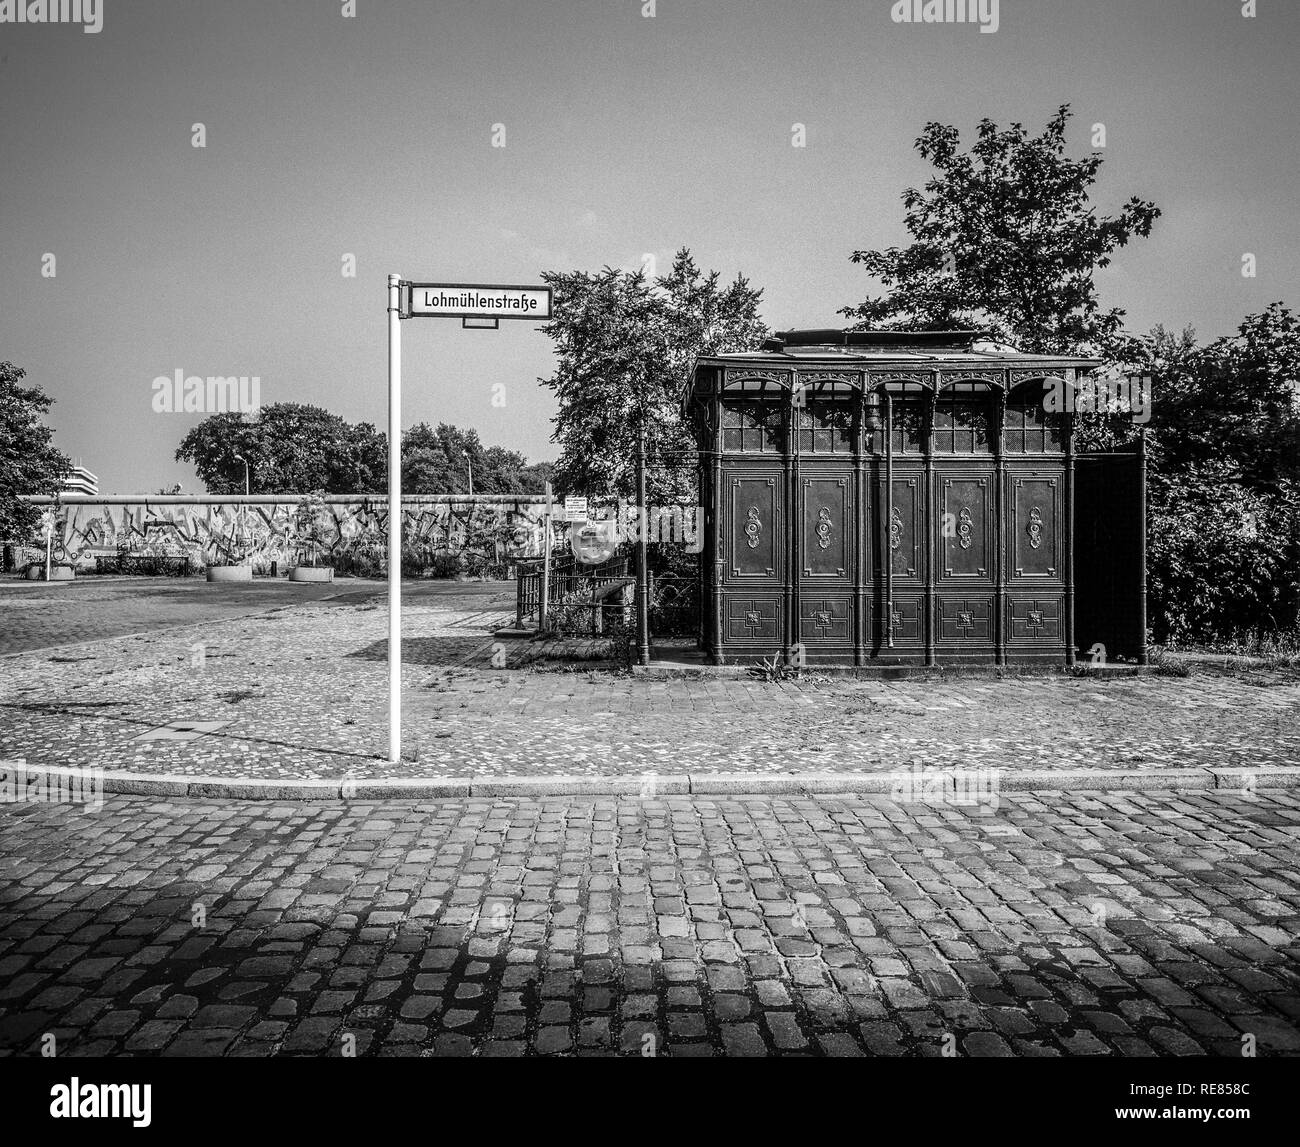 Août 1986, les anciens toilettes publiques 1899 Mur de Berlin, graffitis, Lohmühlenstrasse street sign, Treptow, Berlin Ouest, l'Allemagne, l'Europe, Banque D'Images